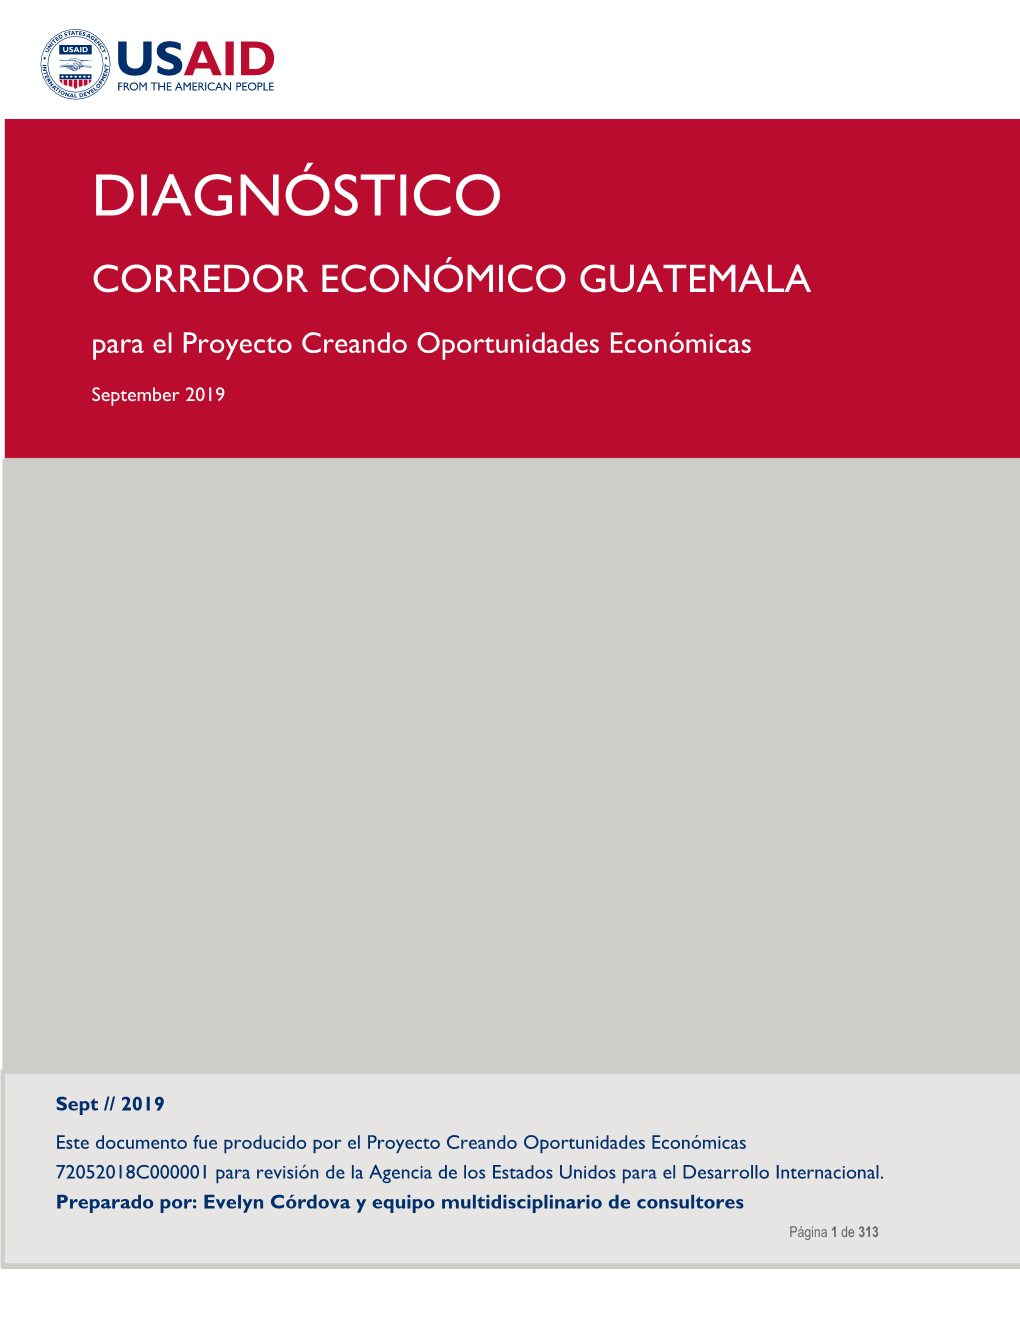 Diagnóstico Corredor Económico Guatemala